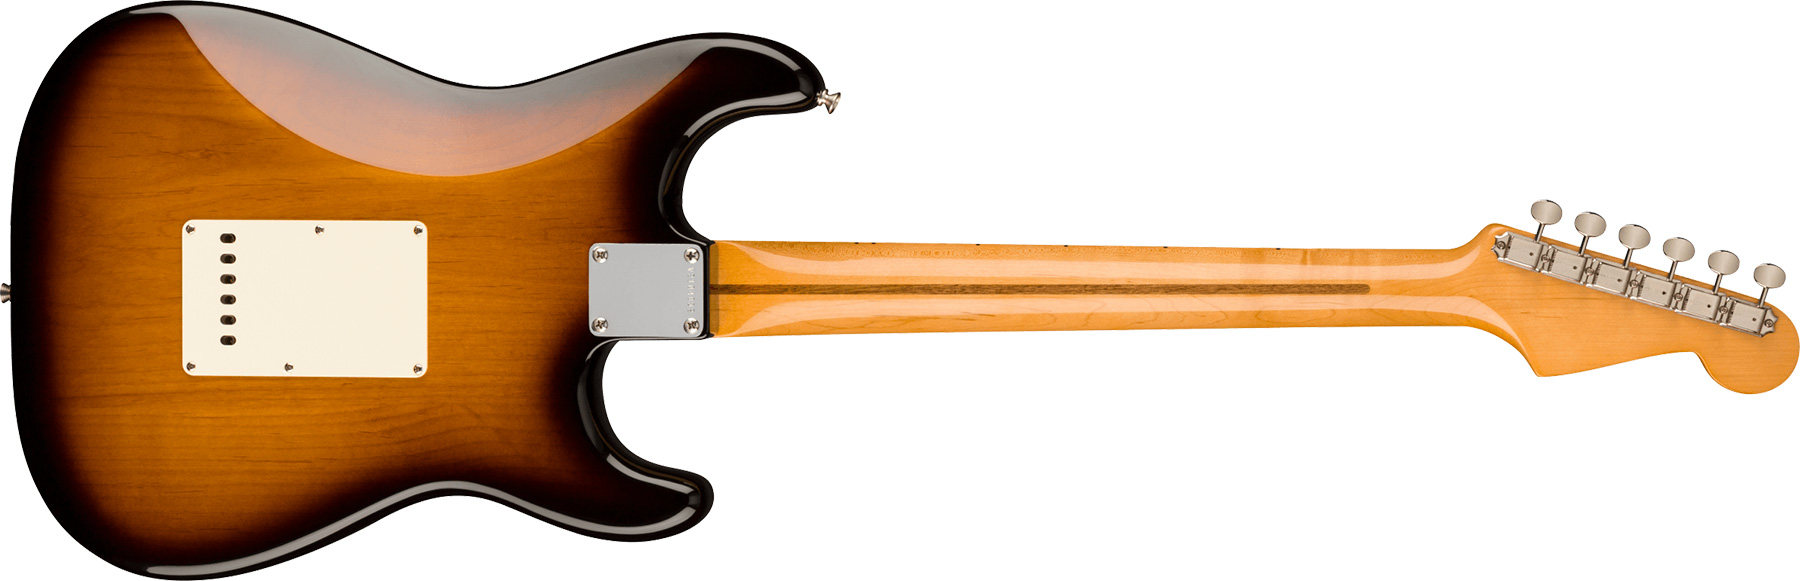 Fender Strat 1957 American Vintage Ii Lh Gaucher Usa 3s Trem Mn - 2-color Sunburst - Guitarra electrica para zurdos - Variation 1